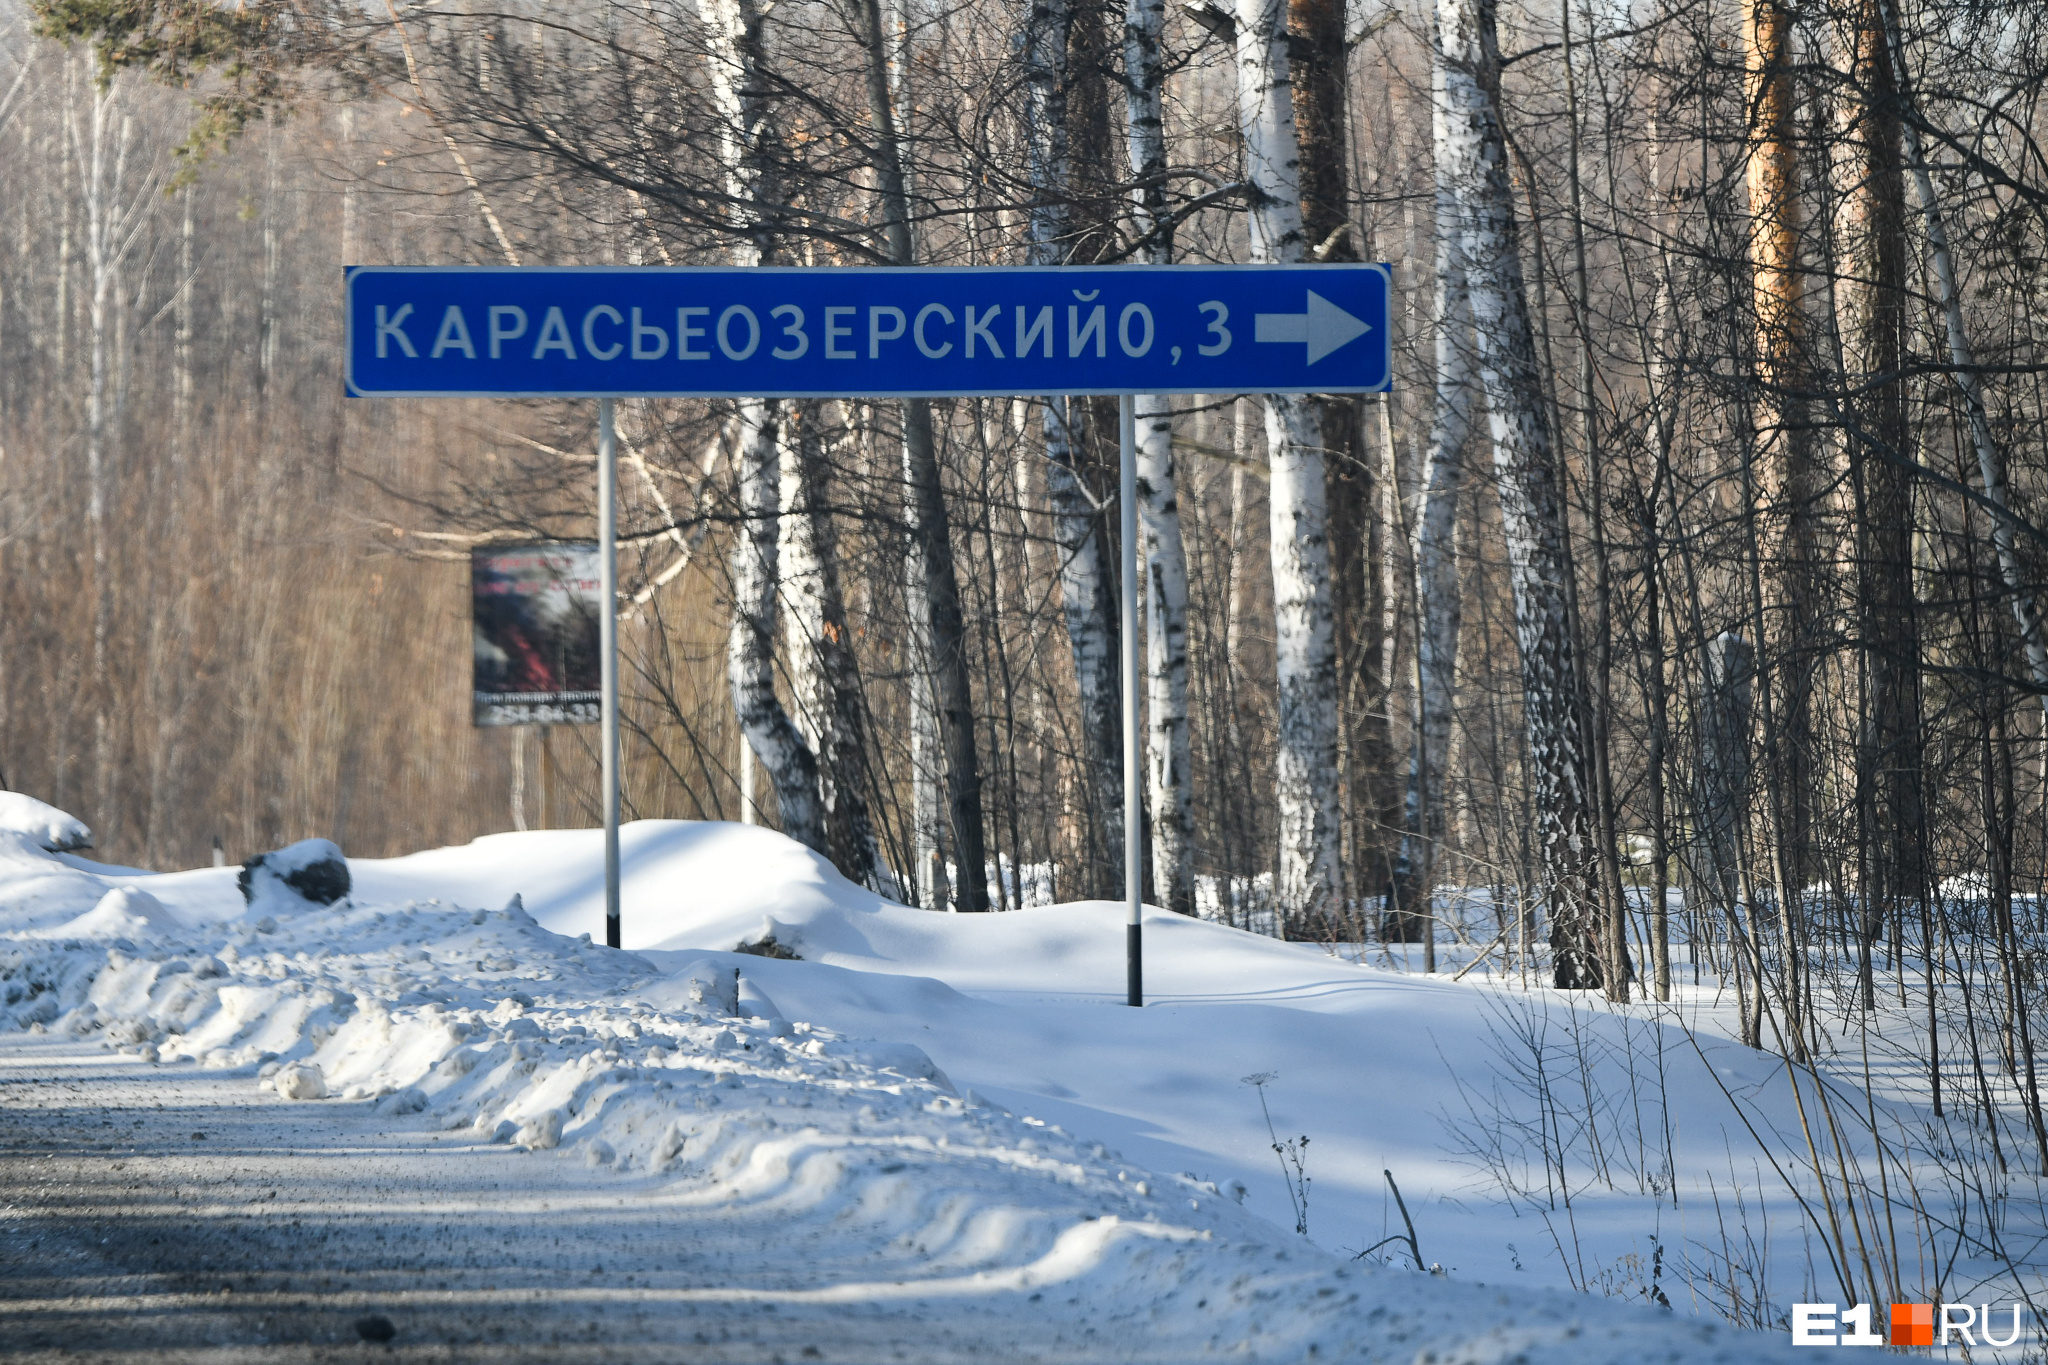 ВИП-дорога: в Екатеринбурге решили расширить трассу, по которой ездят домой чиновники и миллиардеры